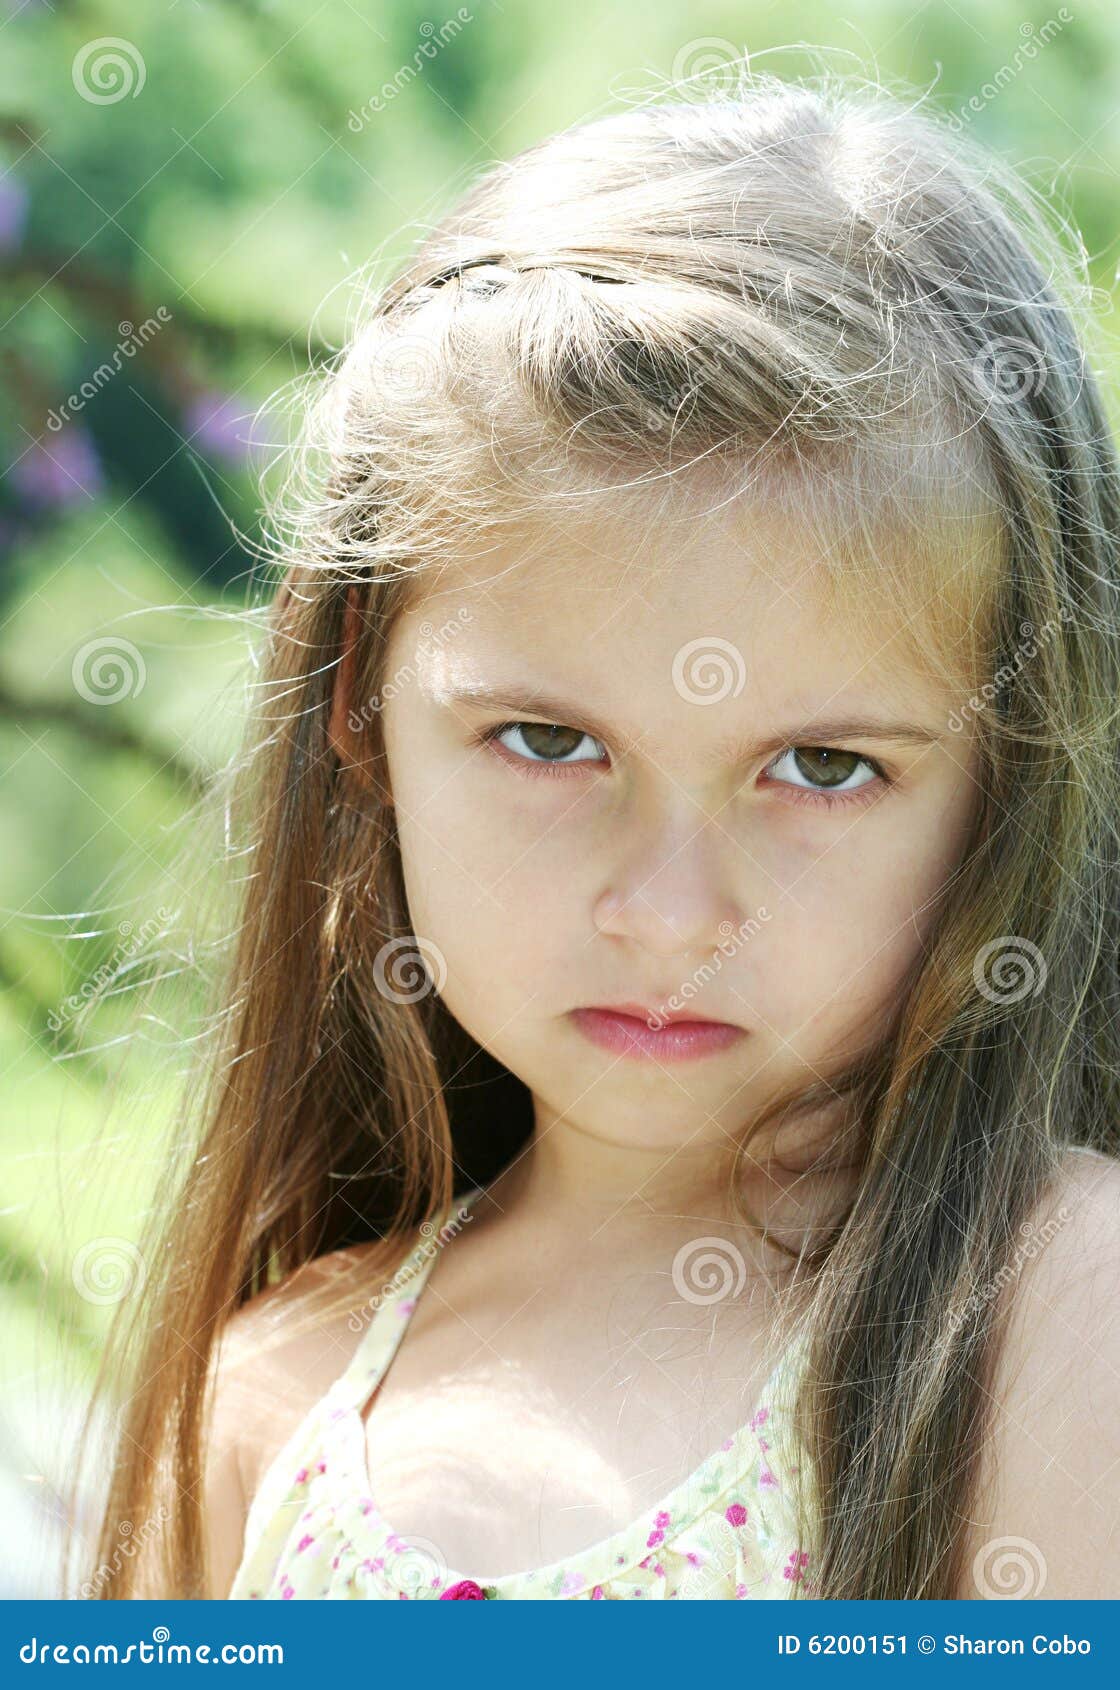 让烦恼和噘嘴在操场的四岁的女孩 库存照片. 图片 包括有 子项, 女性, 头发, 外面, 表达式, 女孩 - 33801156